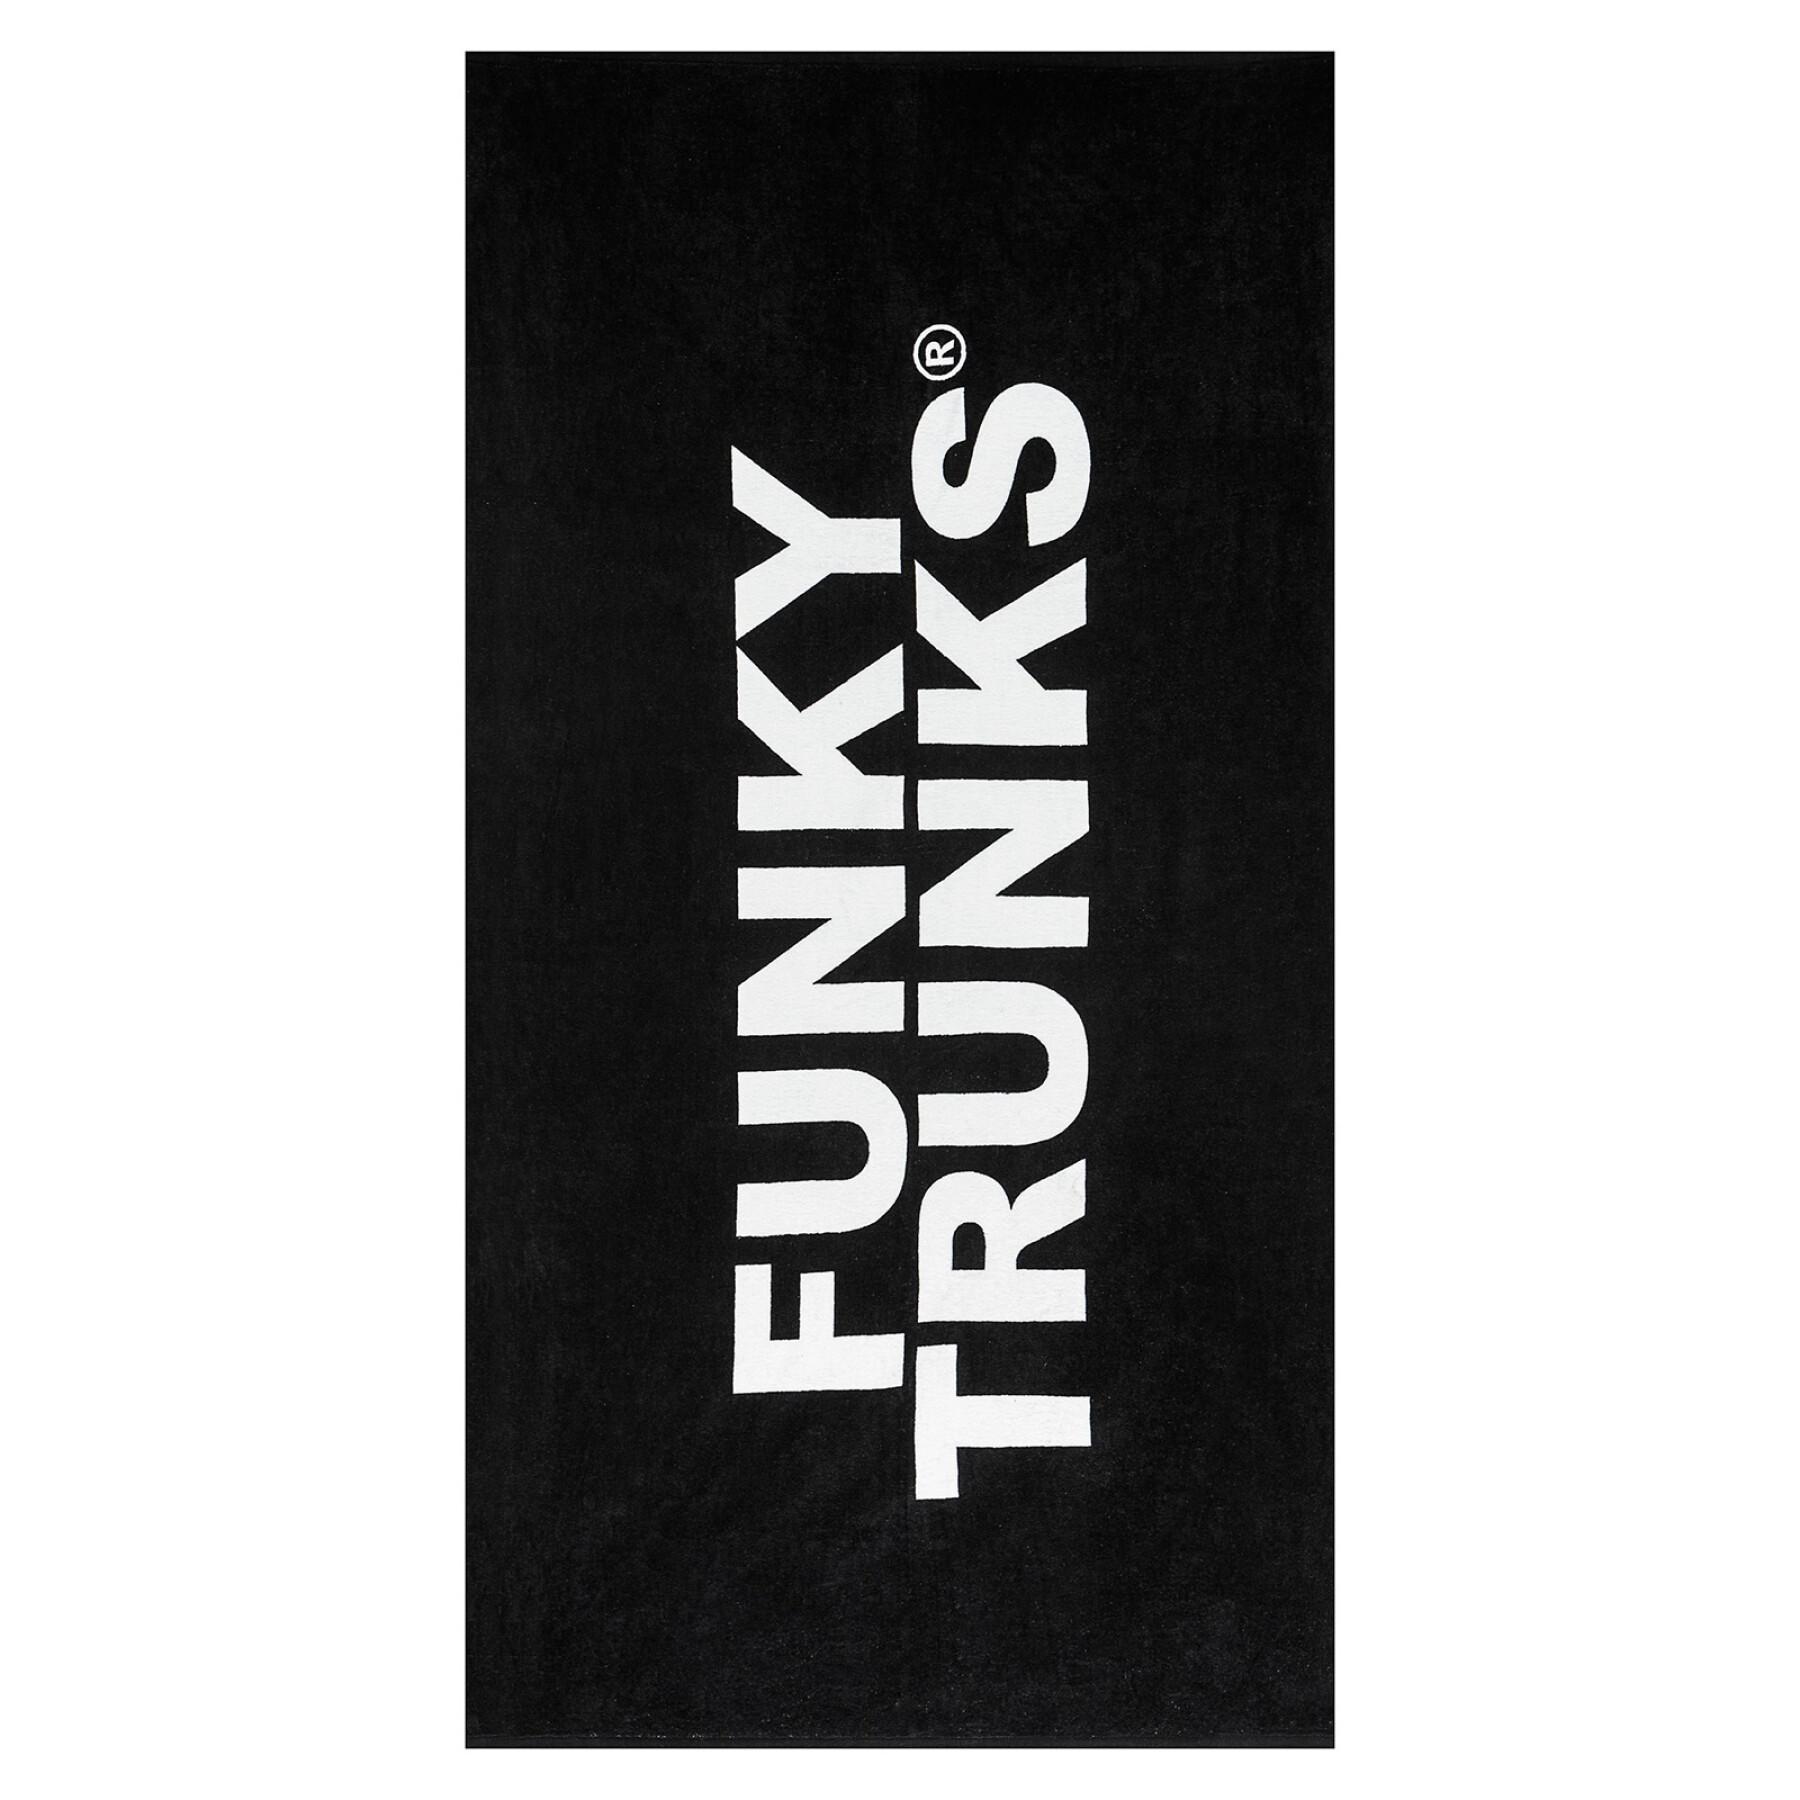 Handdoek Funky Trunks